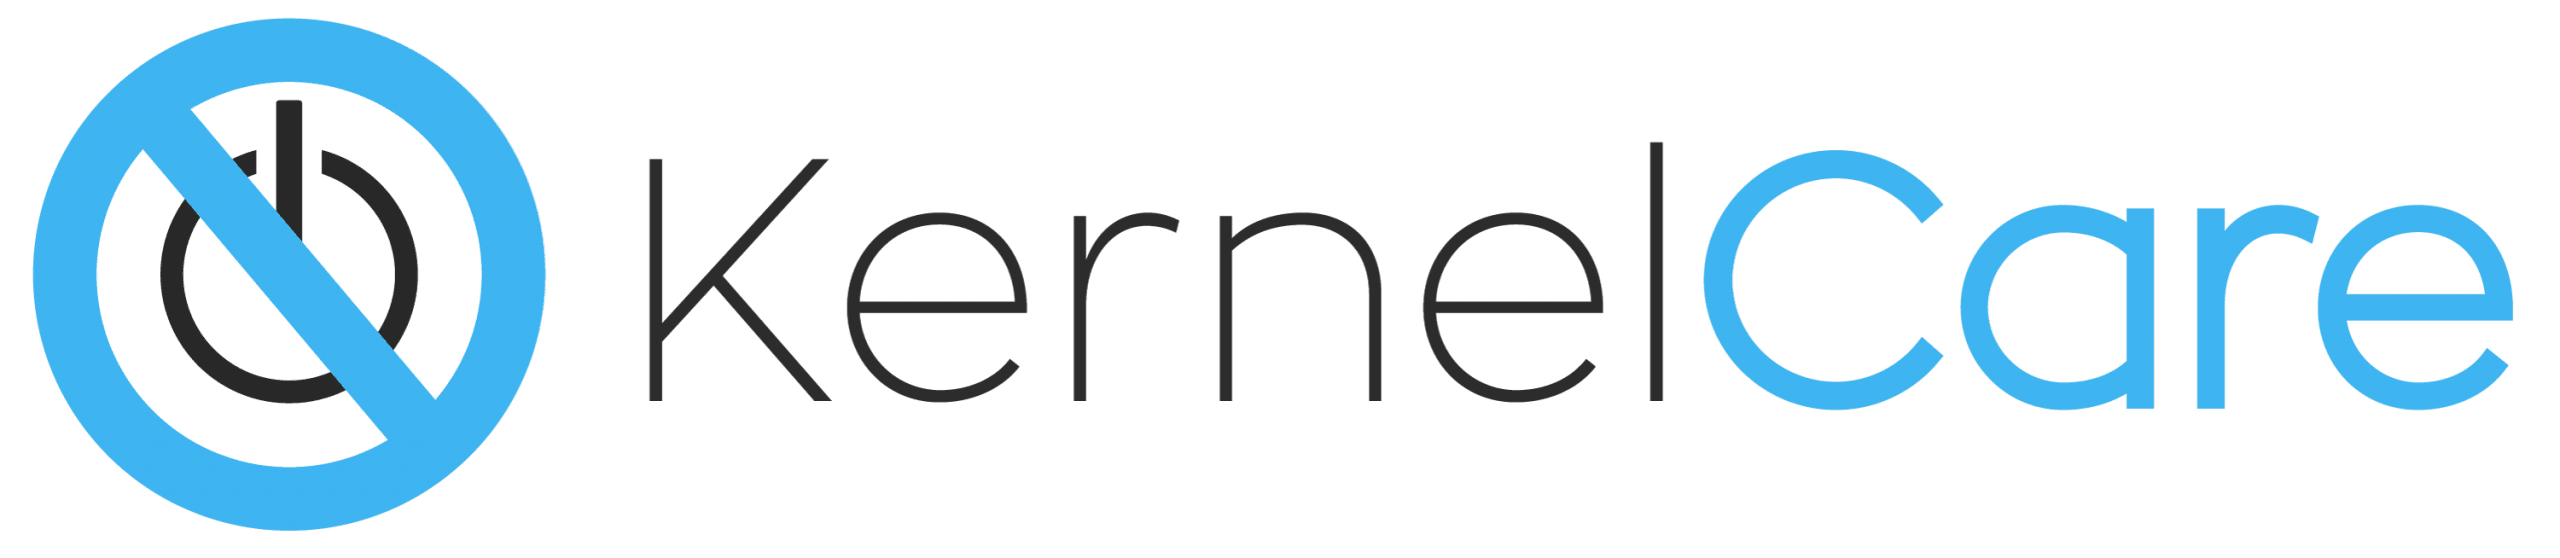 KernelCare license